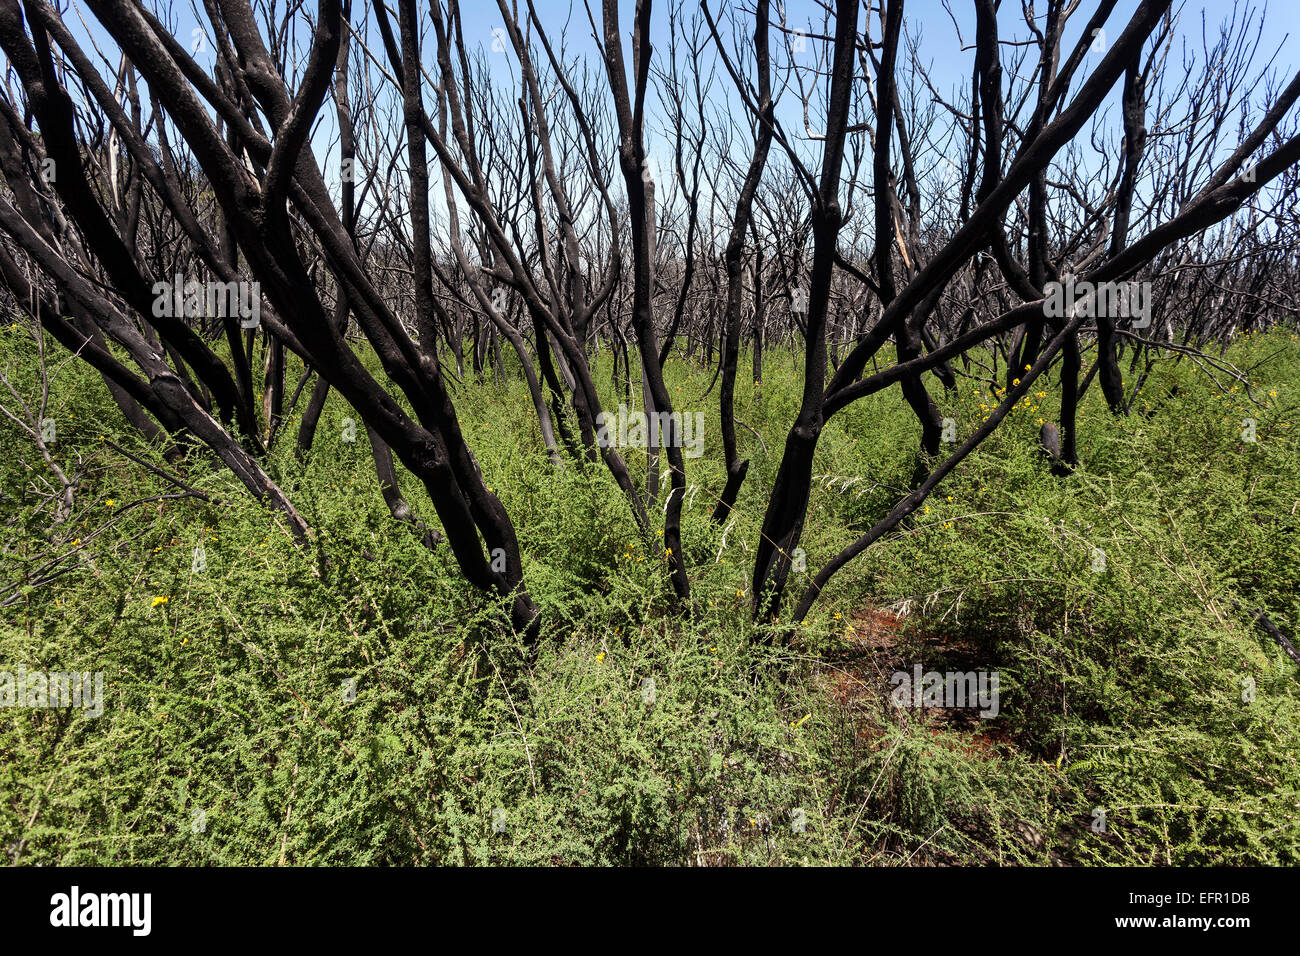 Des arbustes calcinés dans la végétation verte, les traces du feu de forêt de 2012, ci-dessous le Garajonay, La Gomera, Canary Islands, Spain Banque D'Images